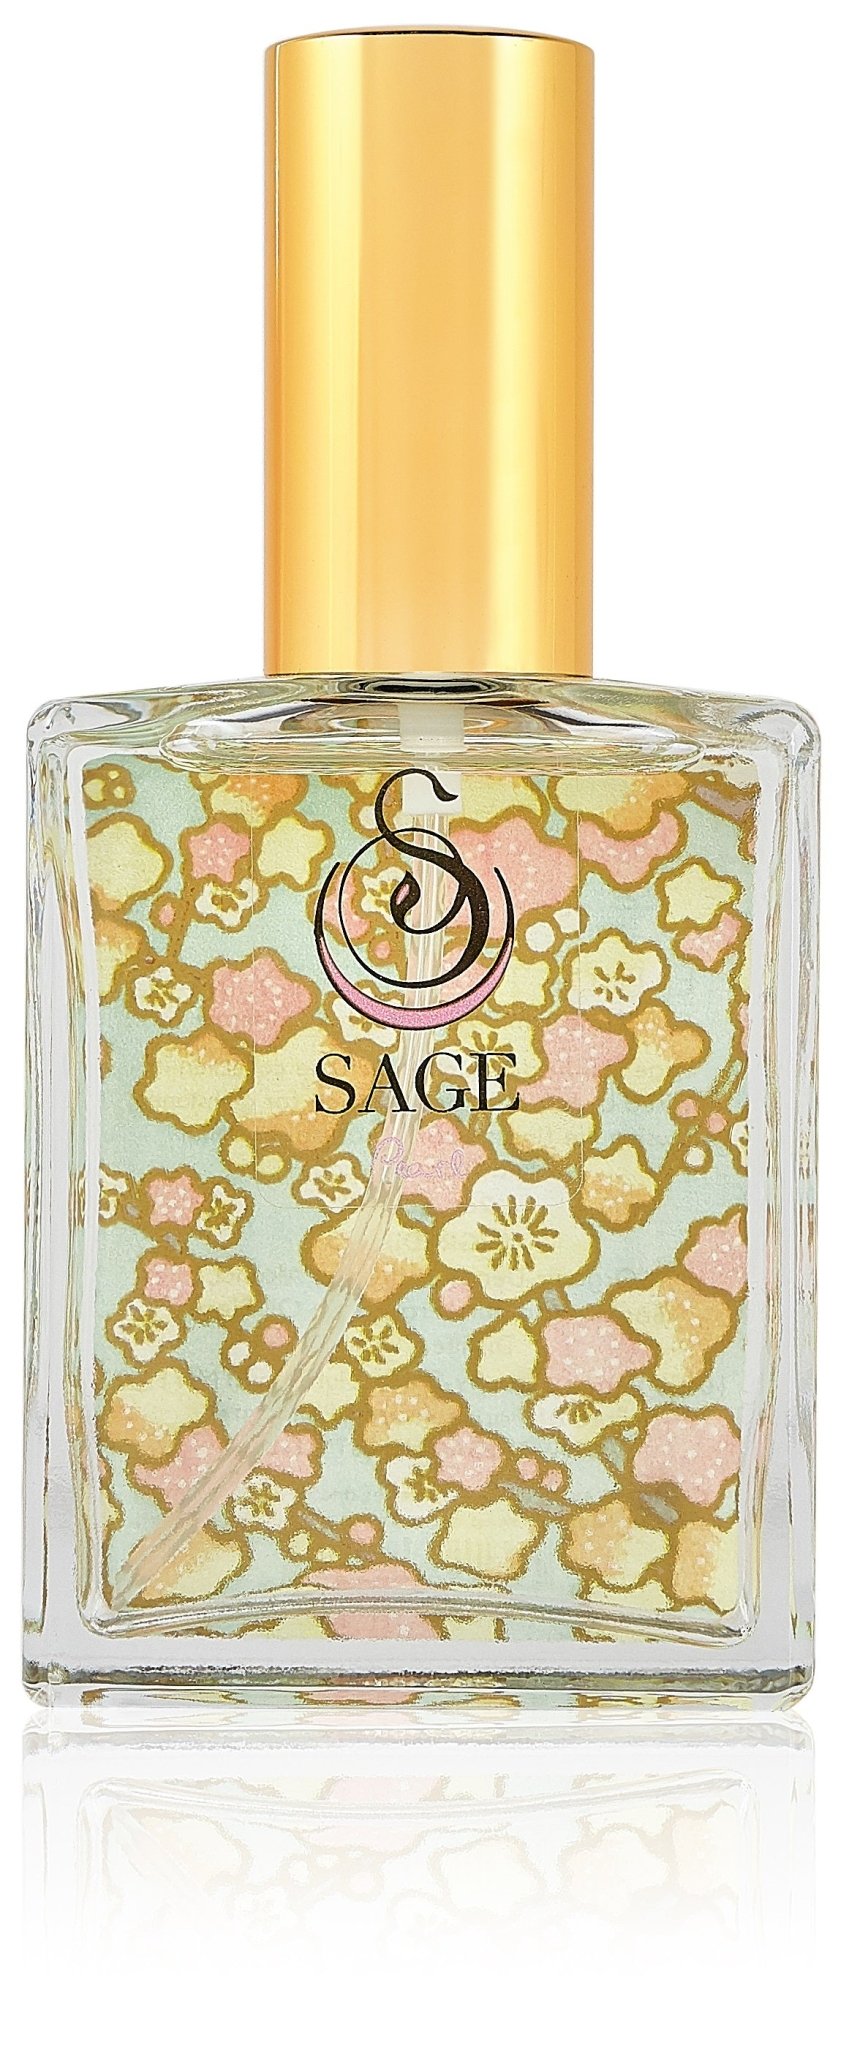 Pearl 2oz Perfume Eau de Toilette by Sage - The Sage Lifestyle